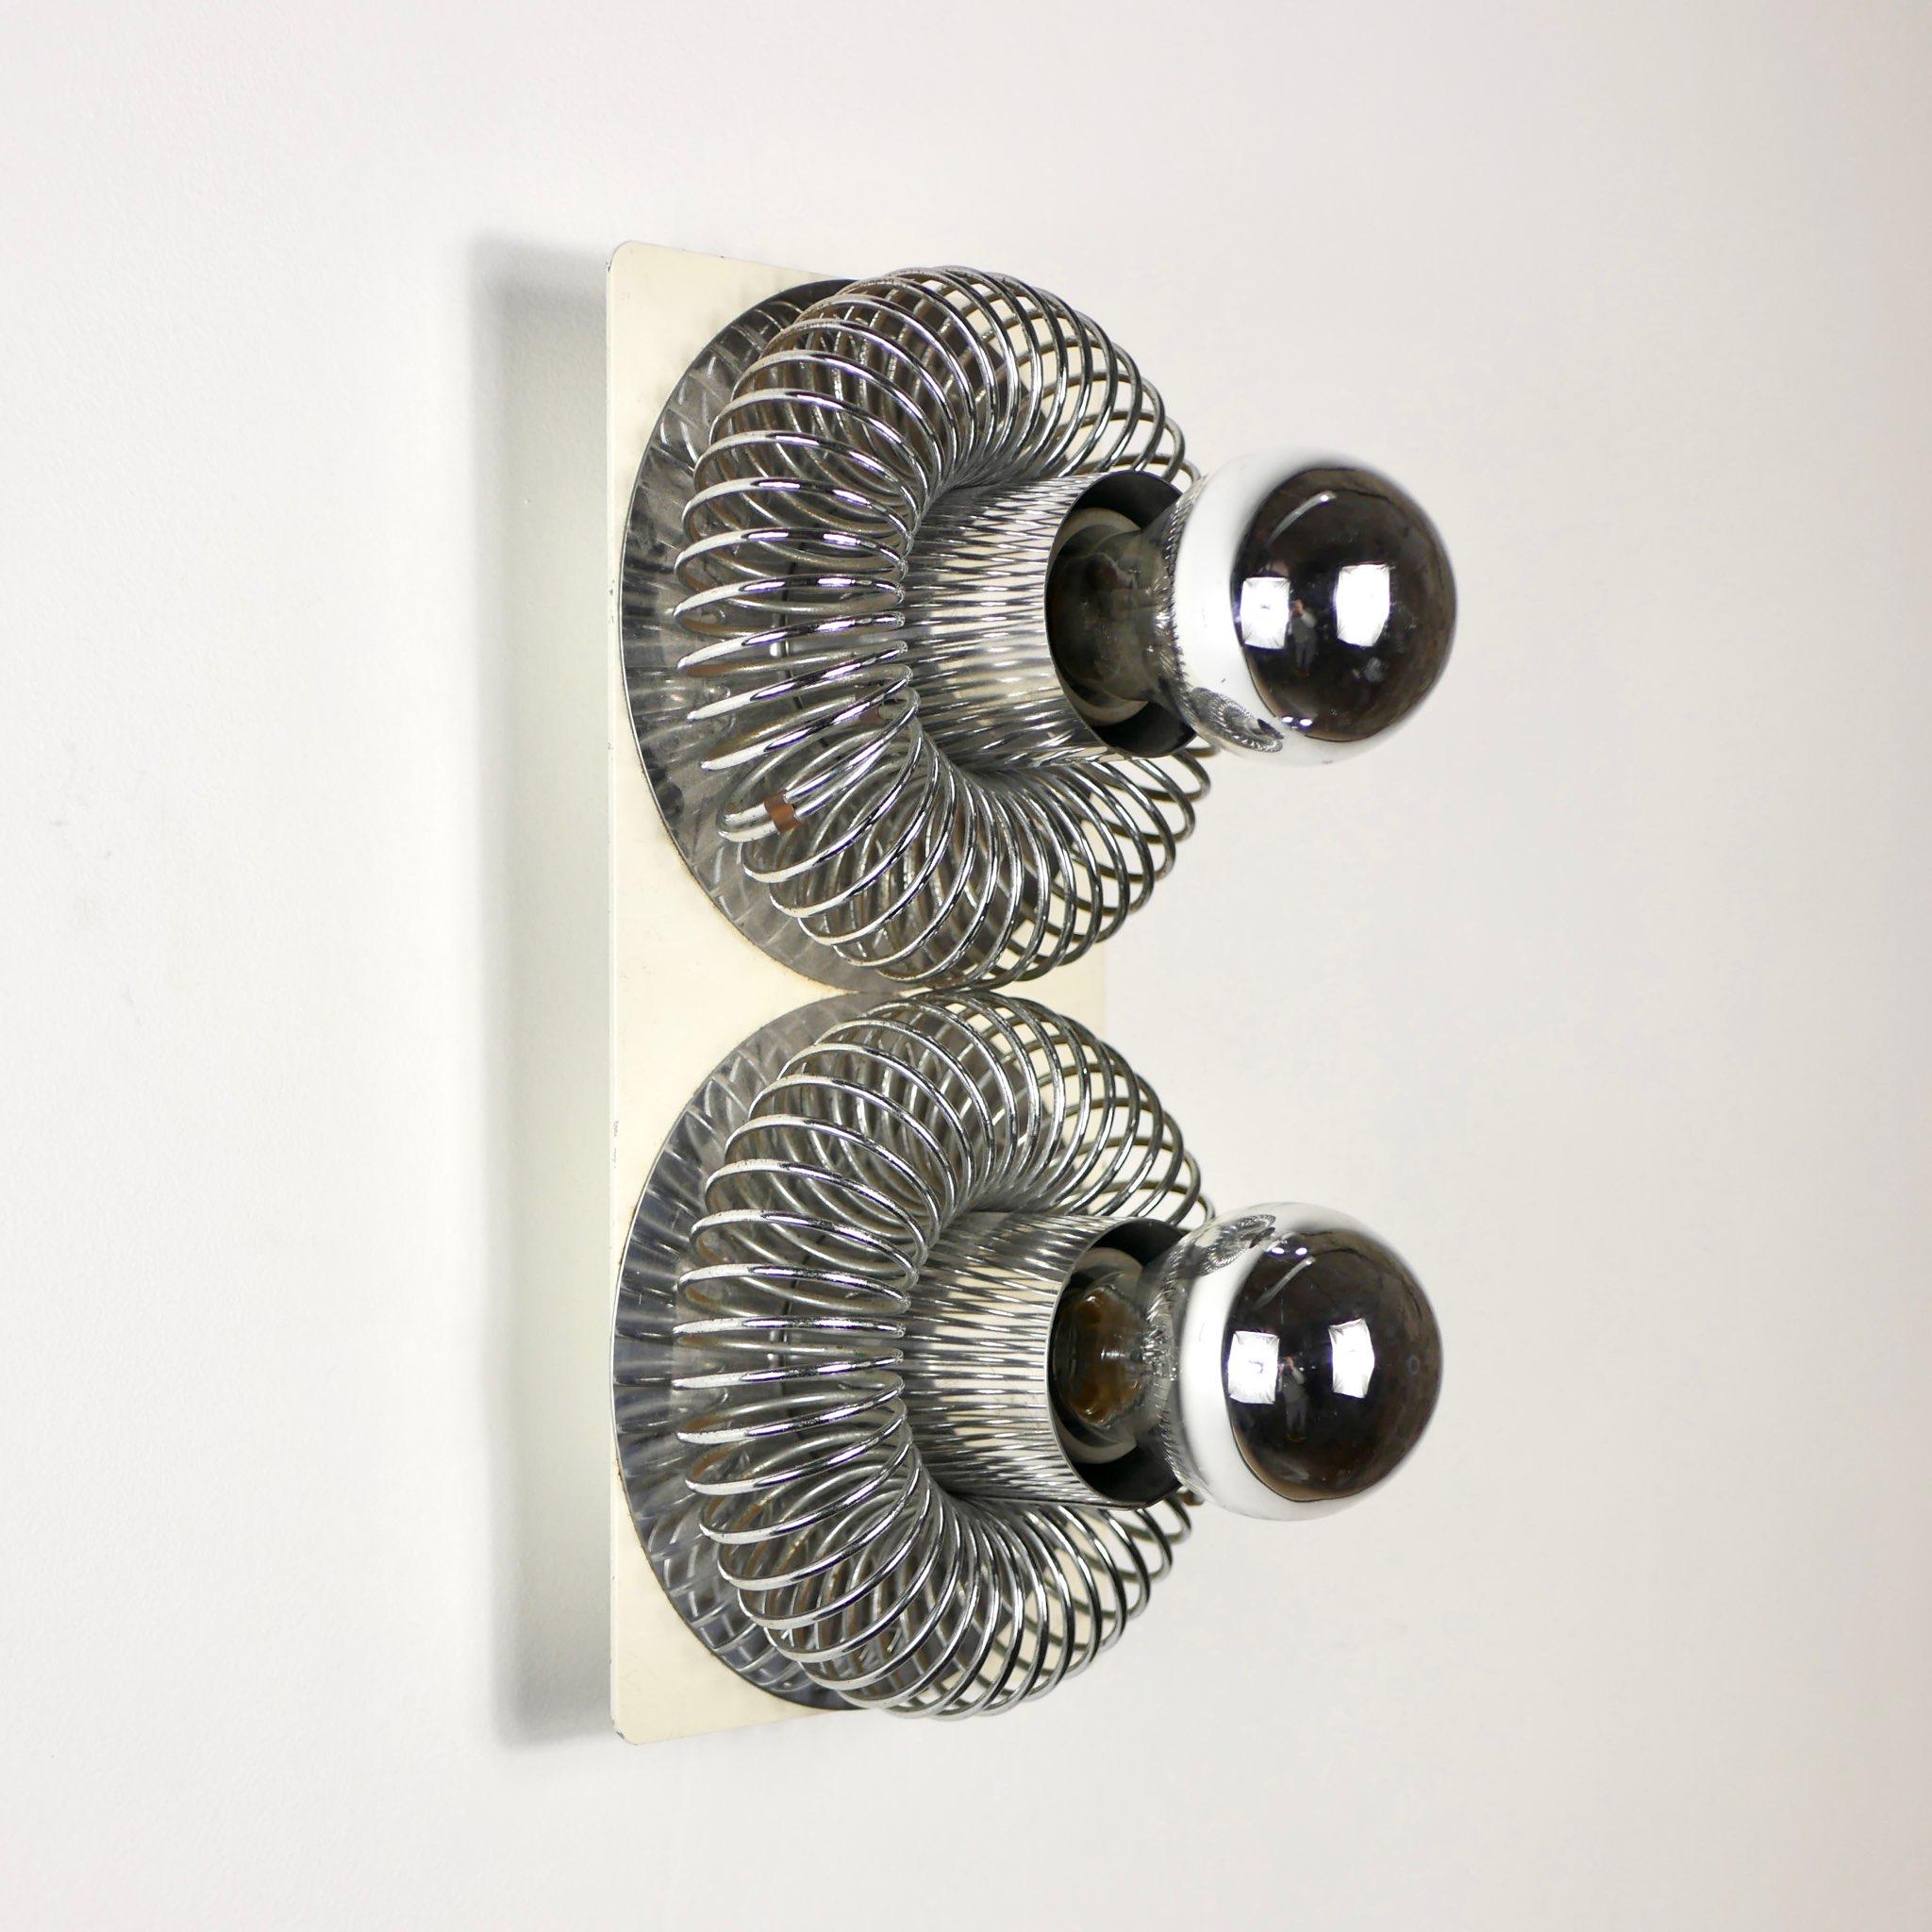 Schöne Doppelfeder-Wandleuchte, entworfen von Andrea Lazzari für Morosini Ende der 1960er Jahre, hergestellt in Italien.
Metallfedern, weiß lackierter Metallsockel.
Insgesamt guter Zustand, leichte Spuren der Zeit.
Abmessungen: H29, L15, P10cm